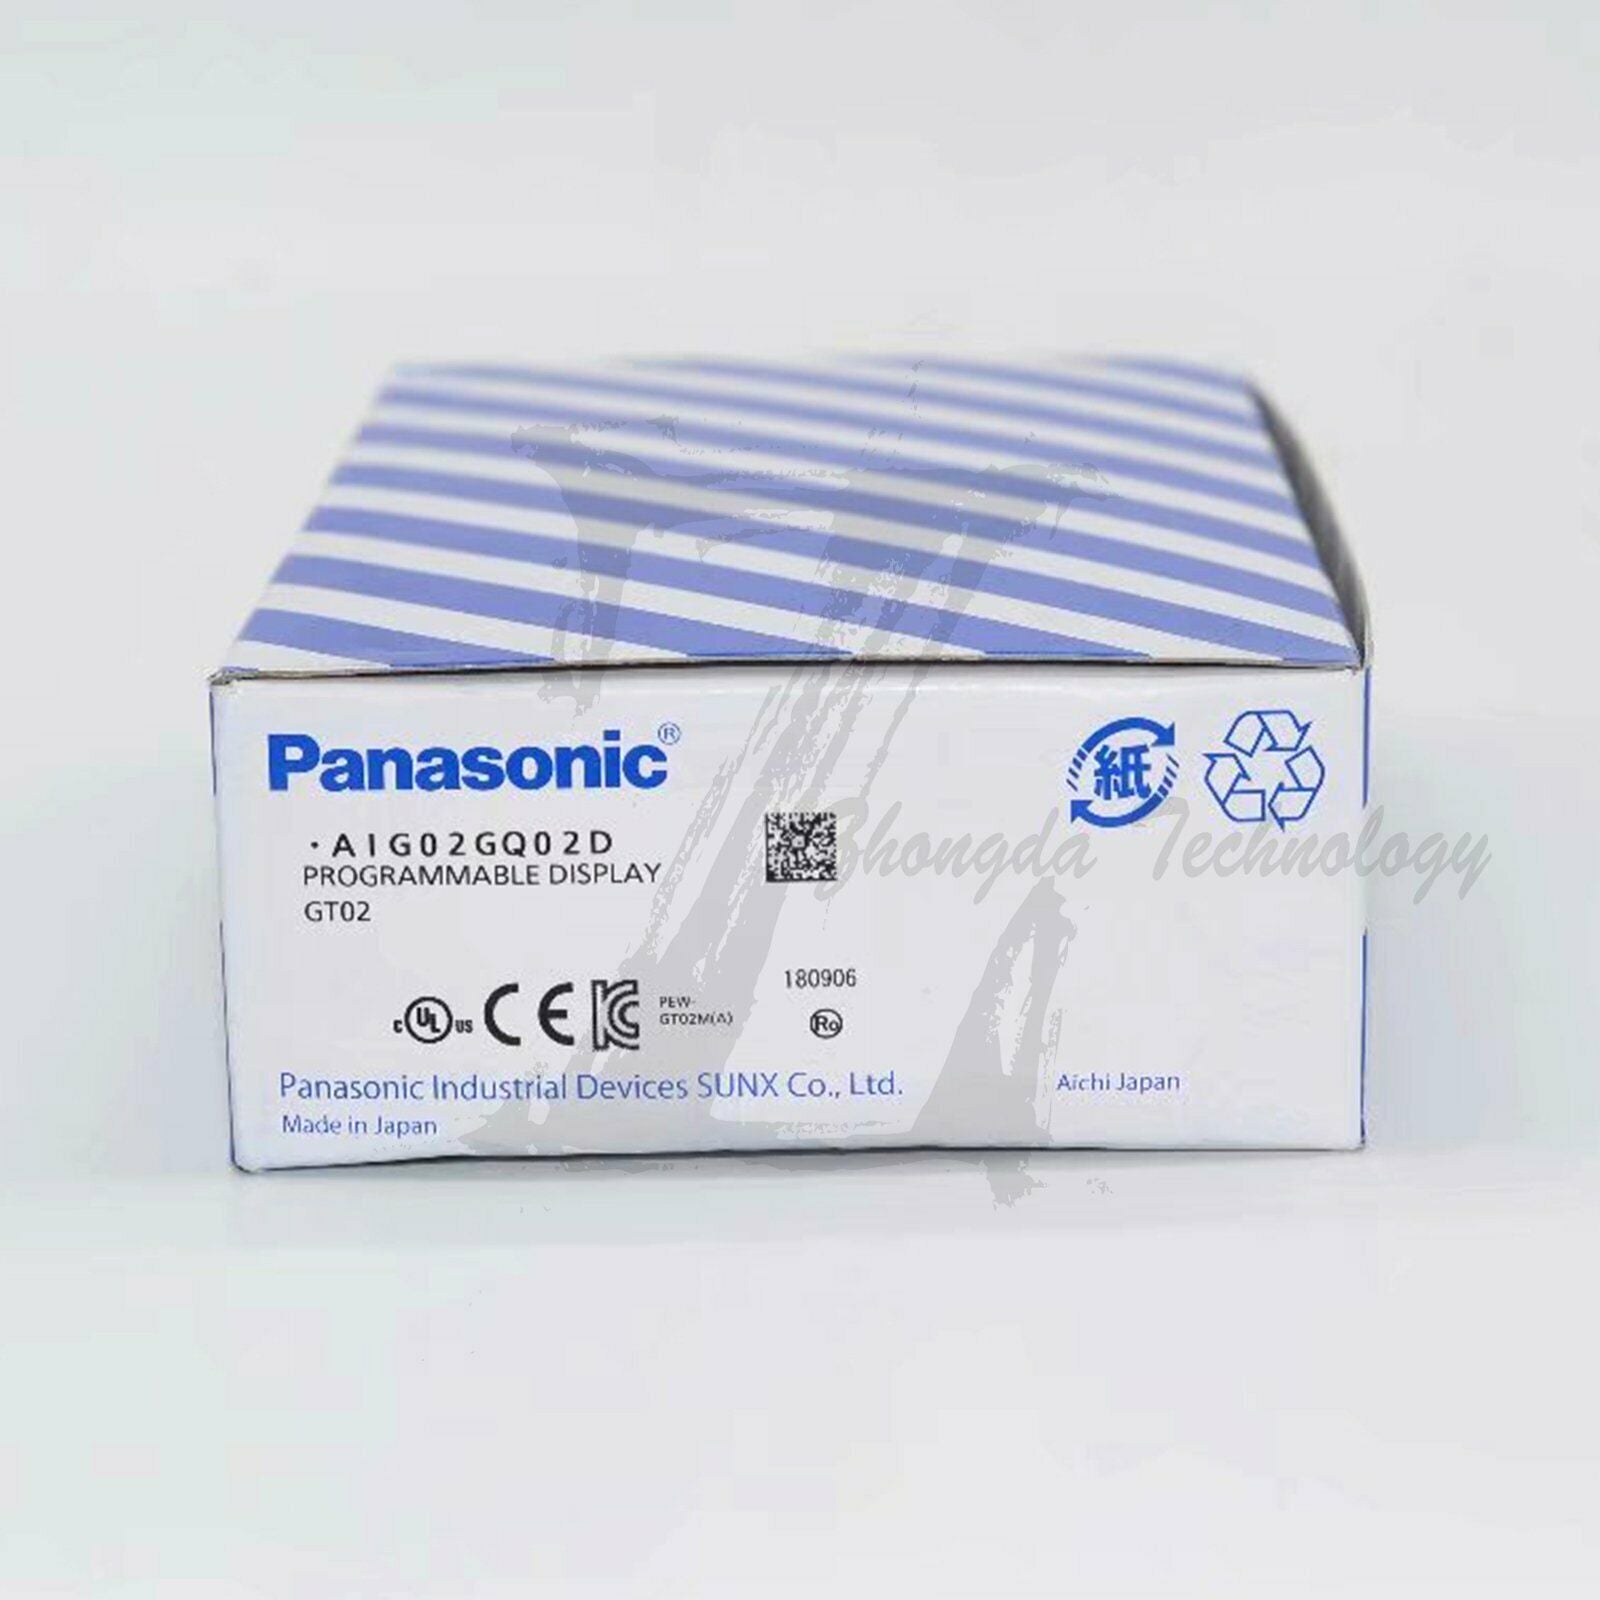 NEW Panasonic GT02 touch screen AIG02GQ02D